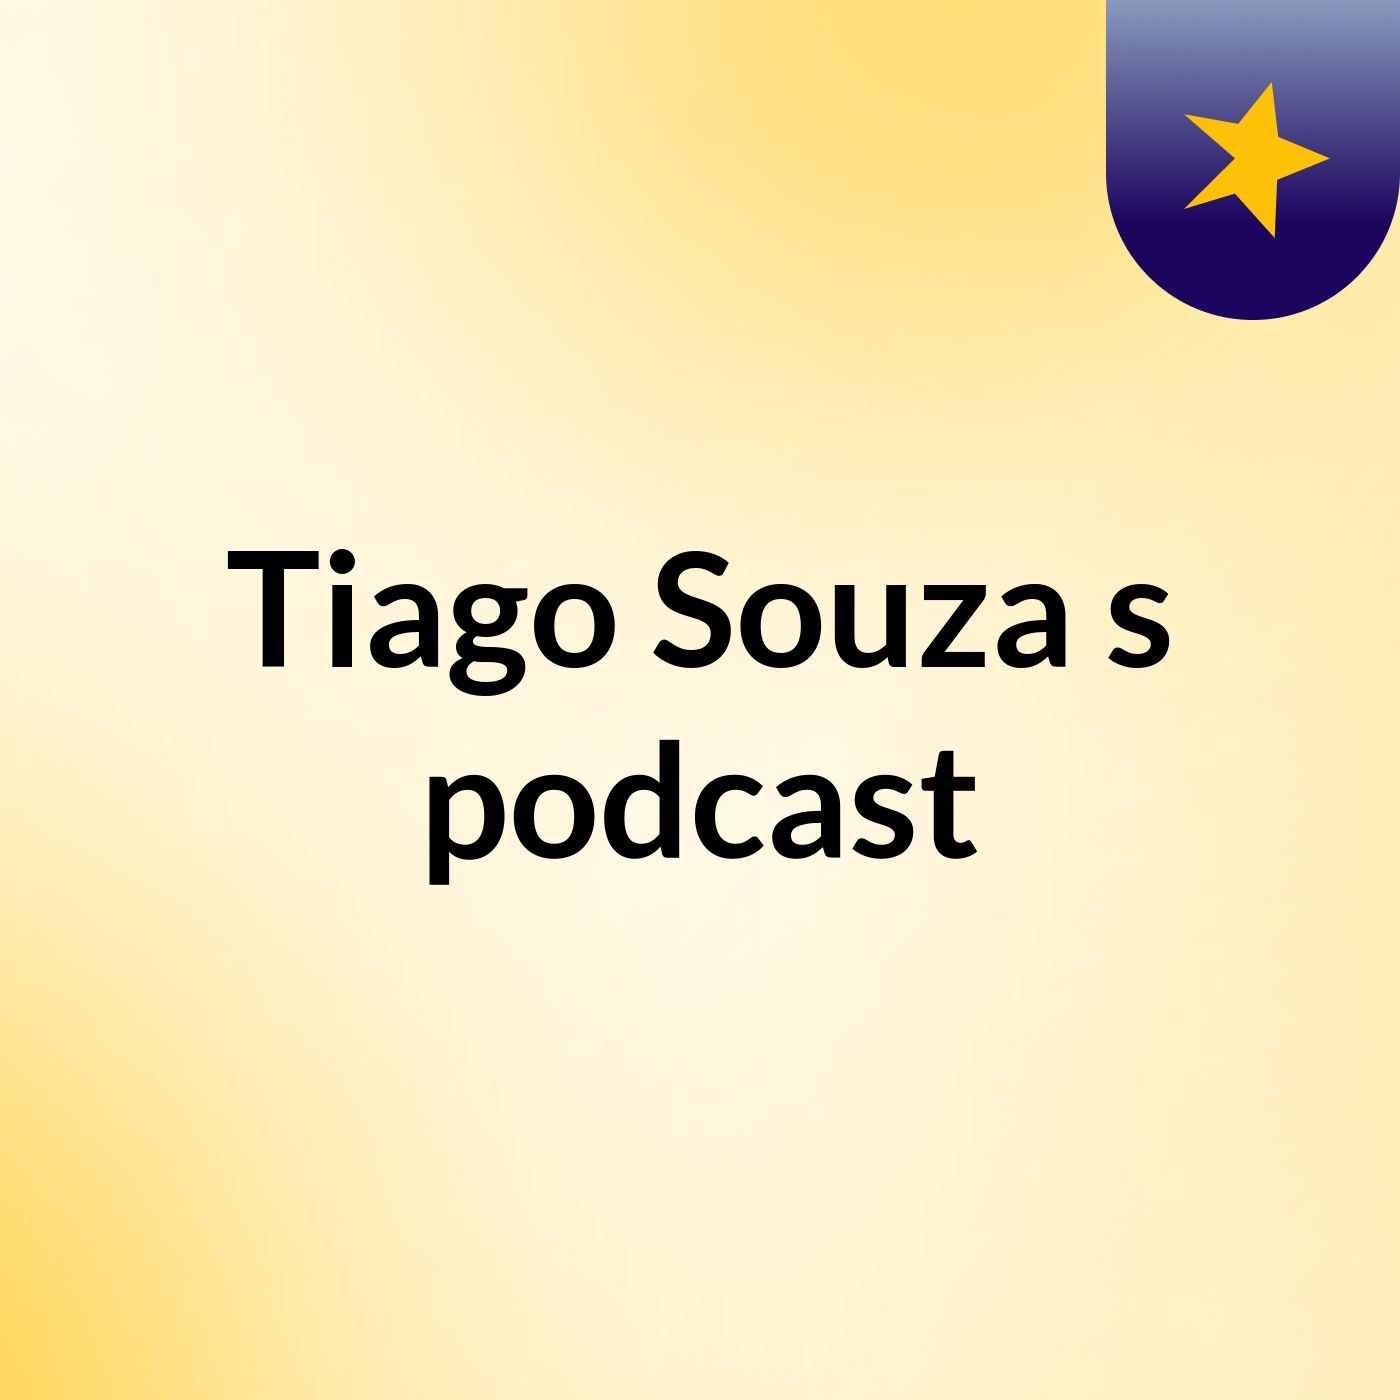 Tiago Souza's podcast